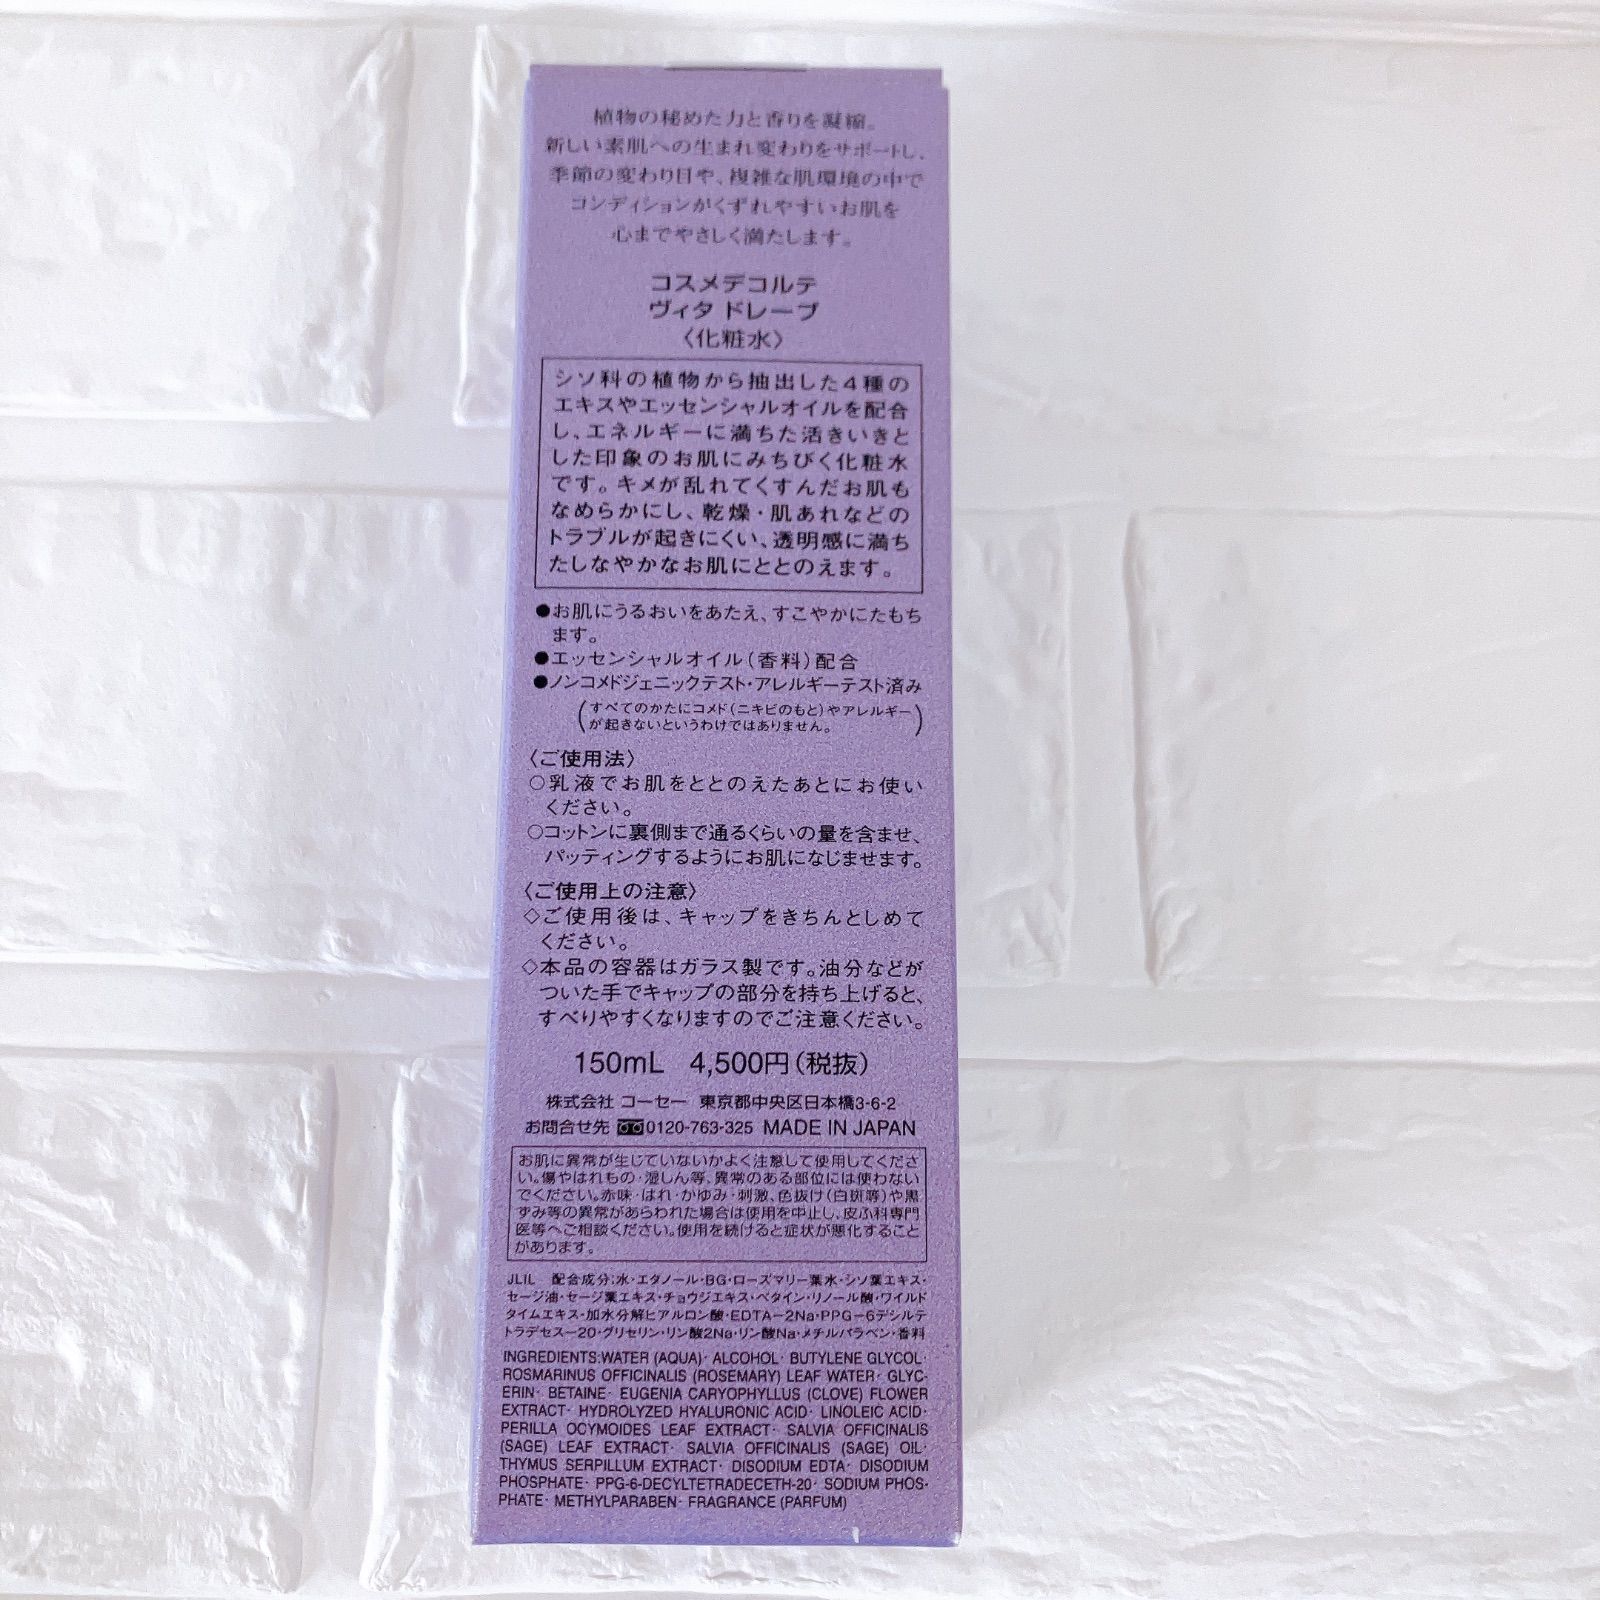 新品 コスメデコルテ ヴィタドレーブ 150ml 2本セット コーセー KOSE ビタドレーブ ヴィタドレープ 化粧水 紫 日本製